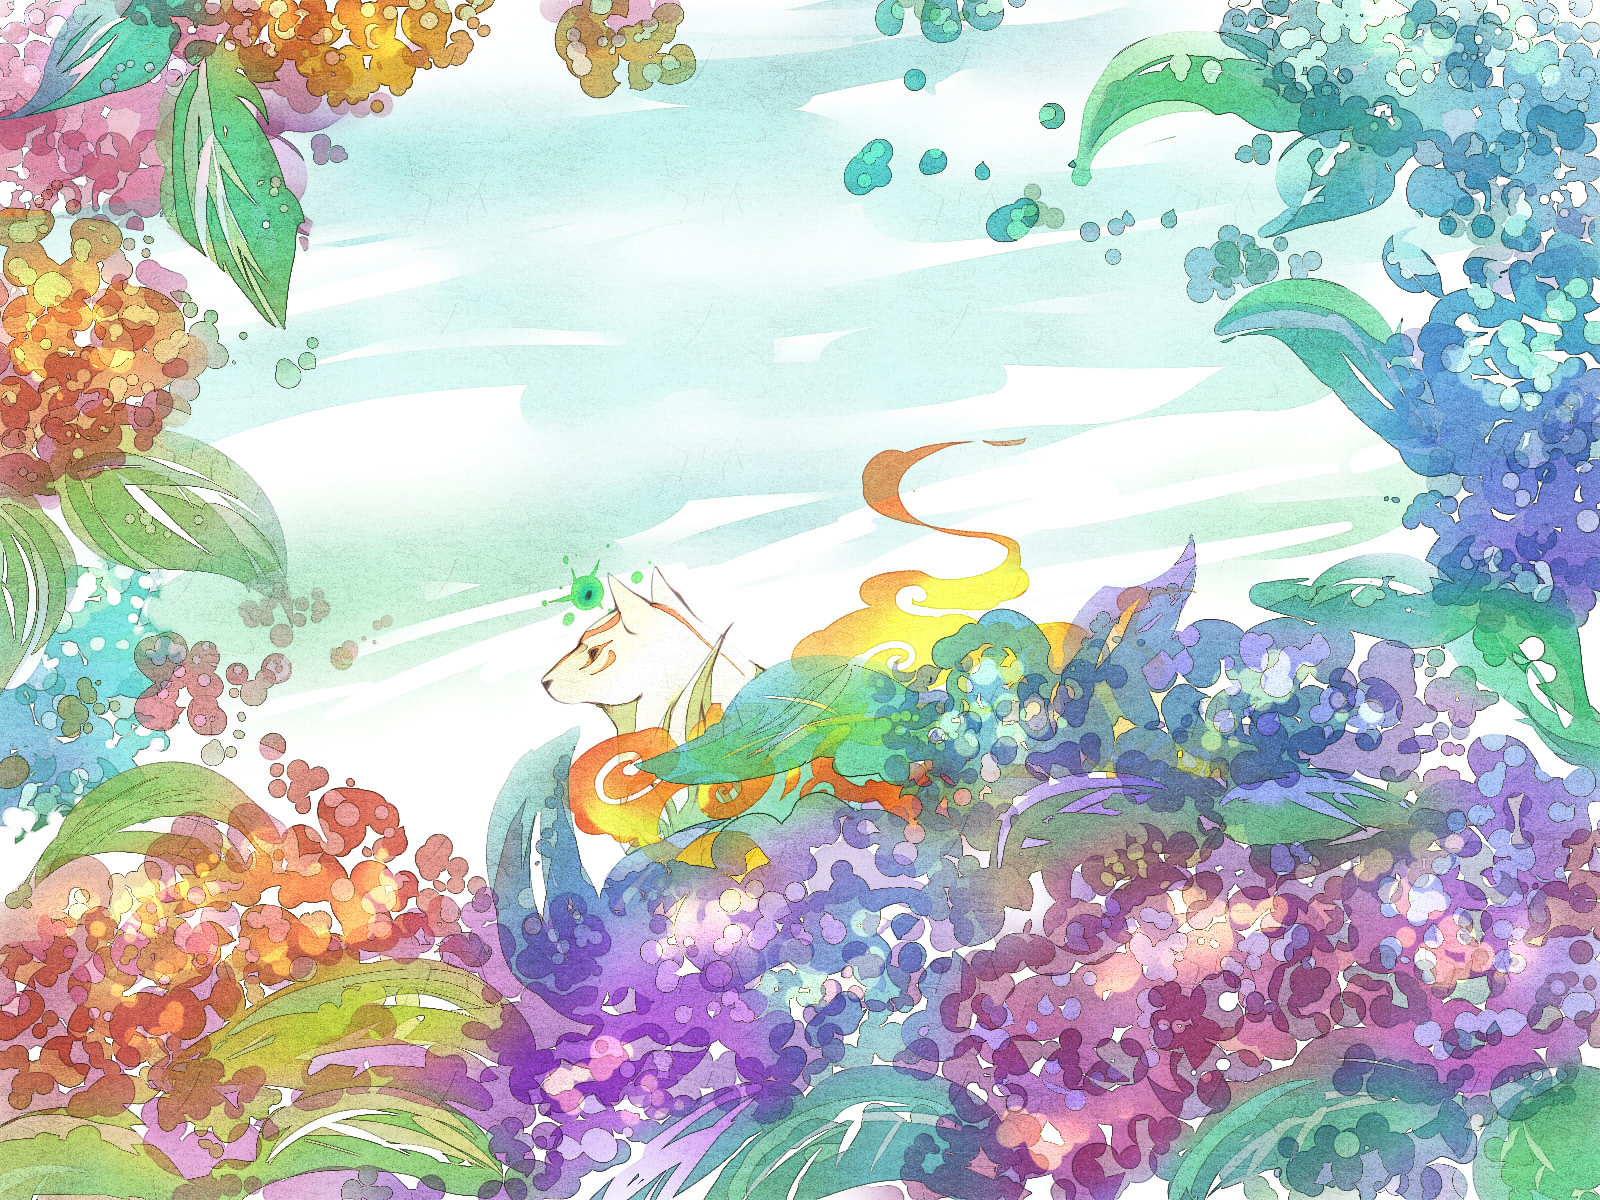 紫陽花插画图片壁纸